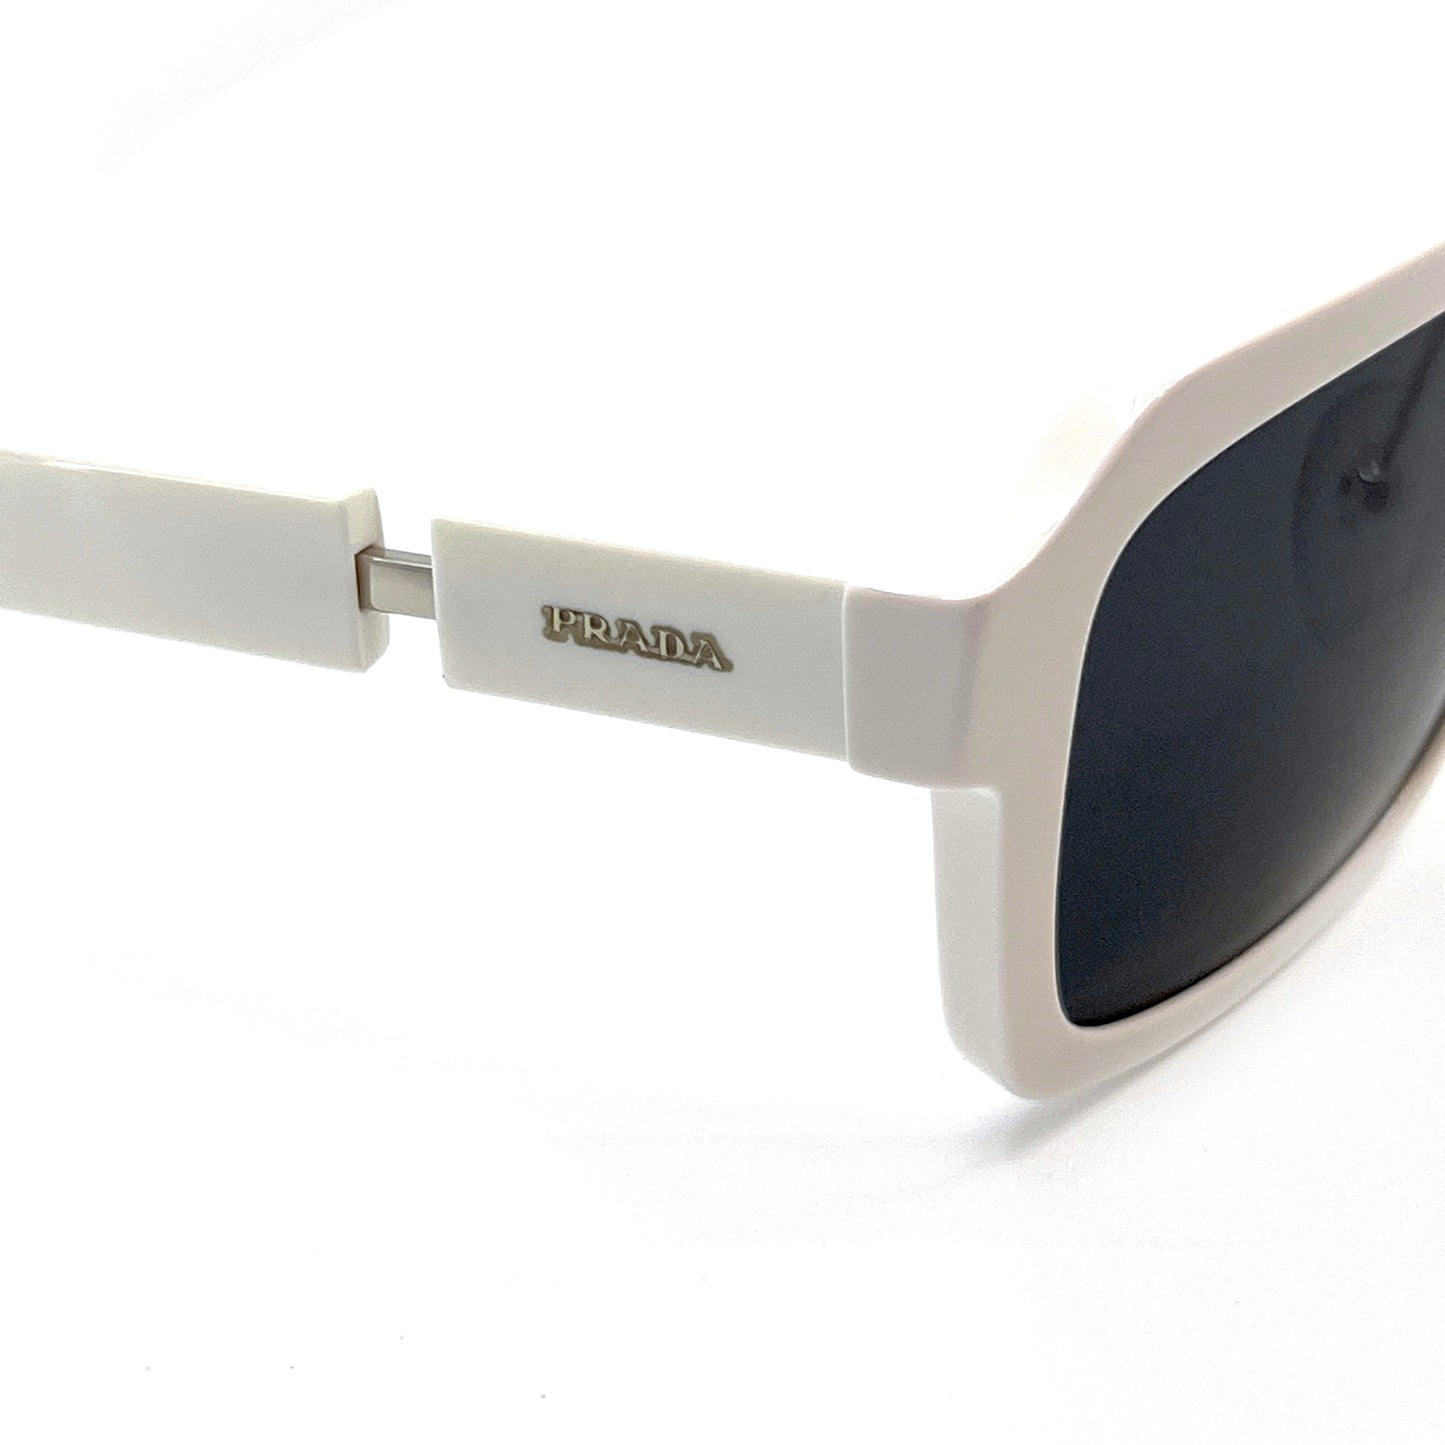 PRADA Sunglasses SPR09X 4AO-5S0